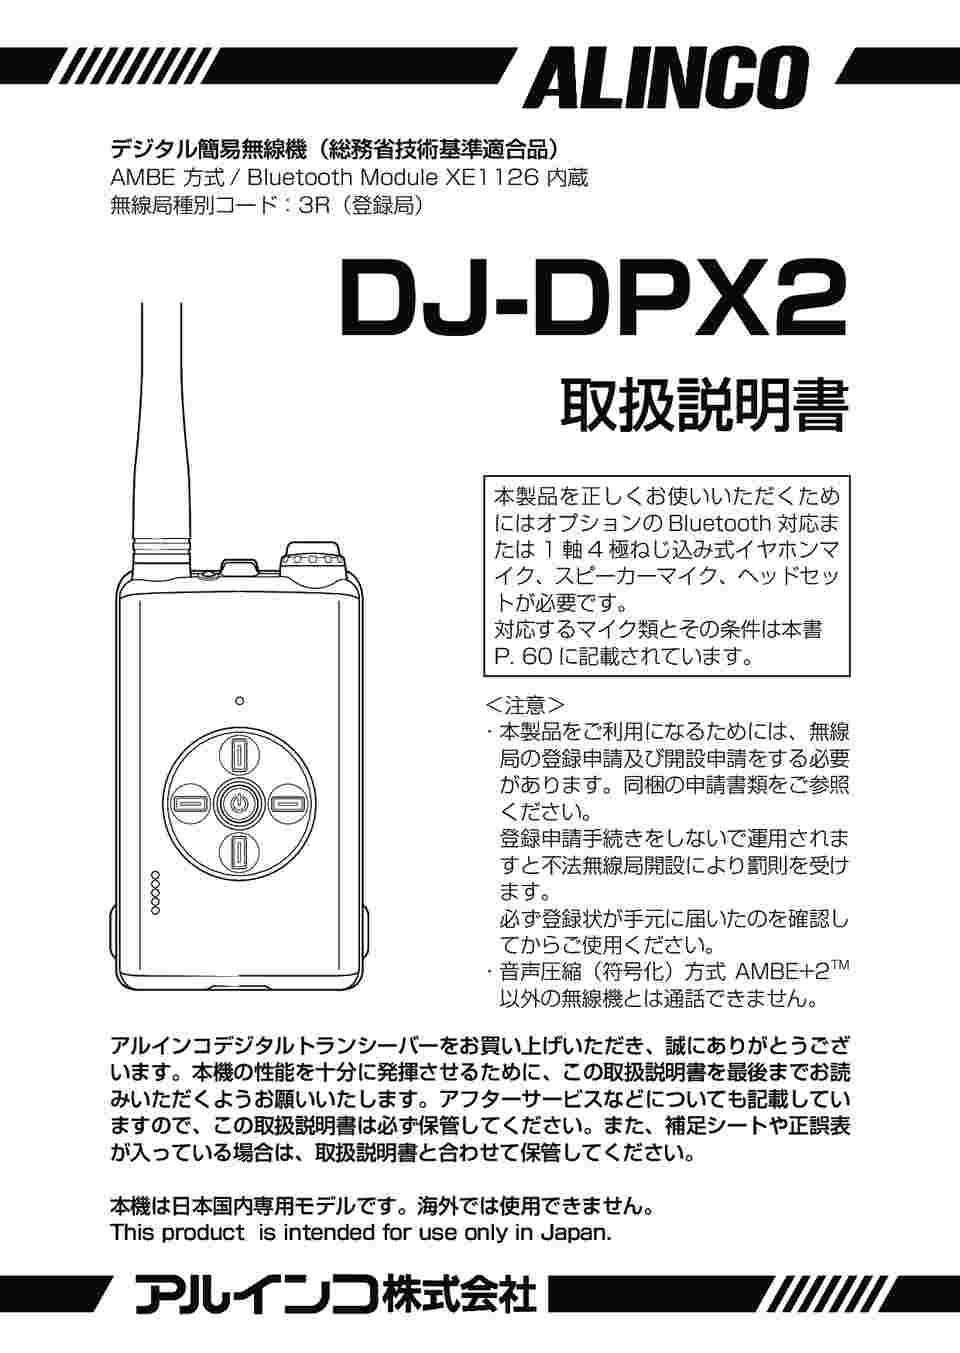 64-4374-67 デジタル簡易無線・登録局 クロスタッチ2 DJ-DPX2KA 【AXEL